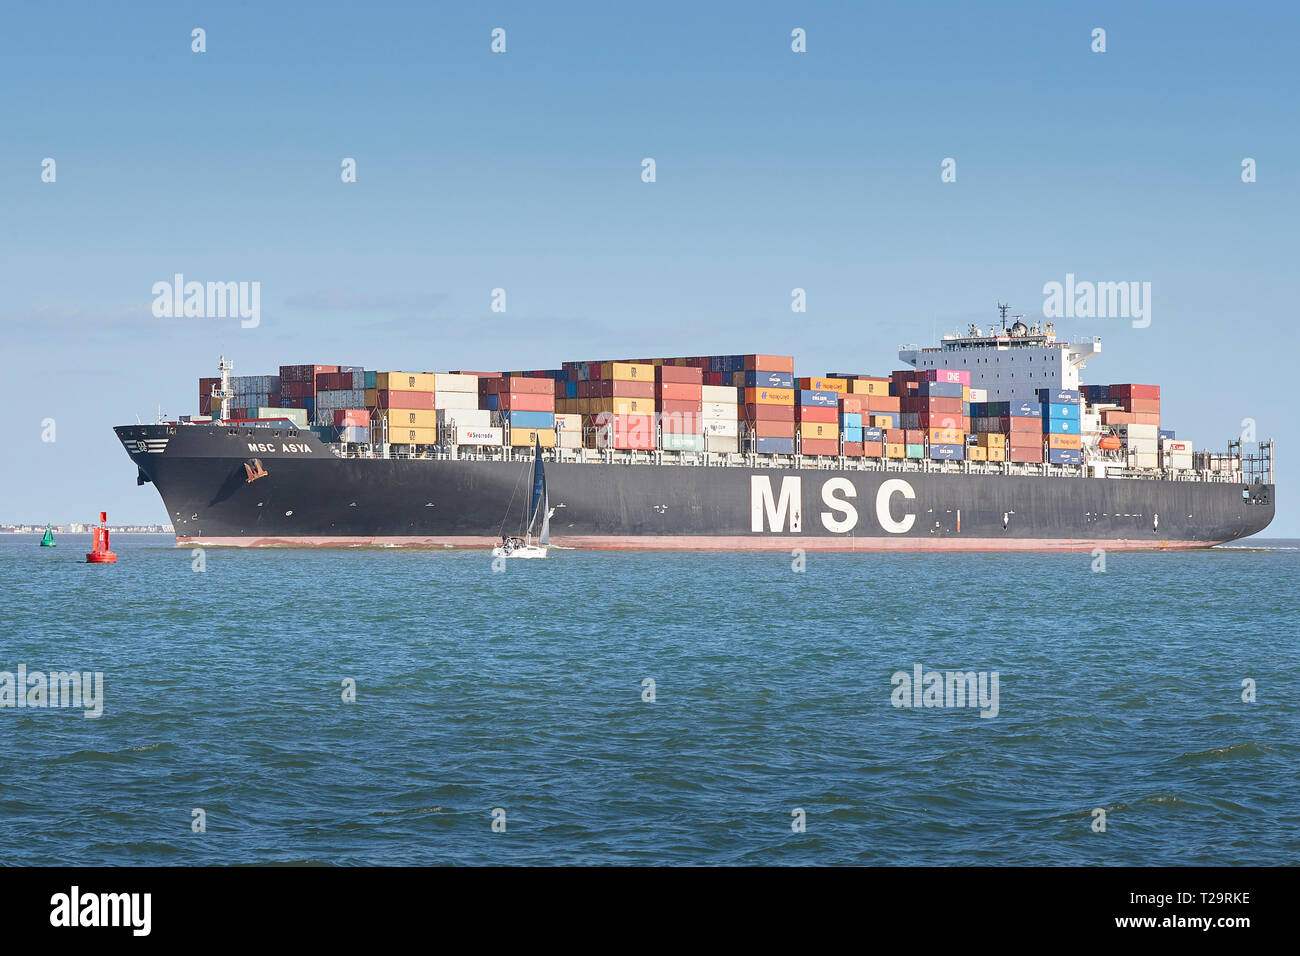 Le porte-conteneurs, MSC ASYA, entre dans le chenal profond comme elle s'approche du port de Southampton, un voilier passant au premier plan, au Royaume-Uni. Banque D'Images